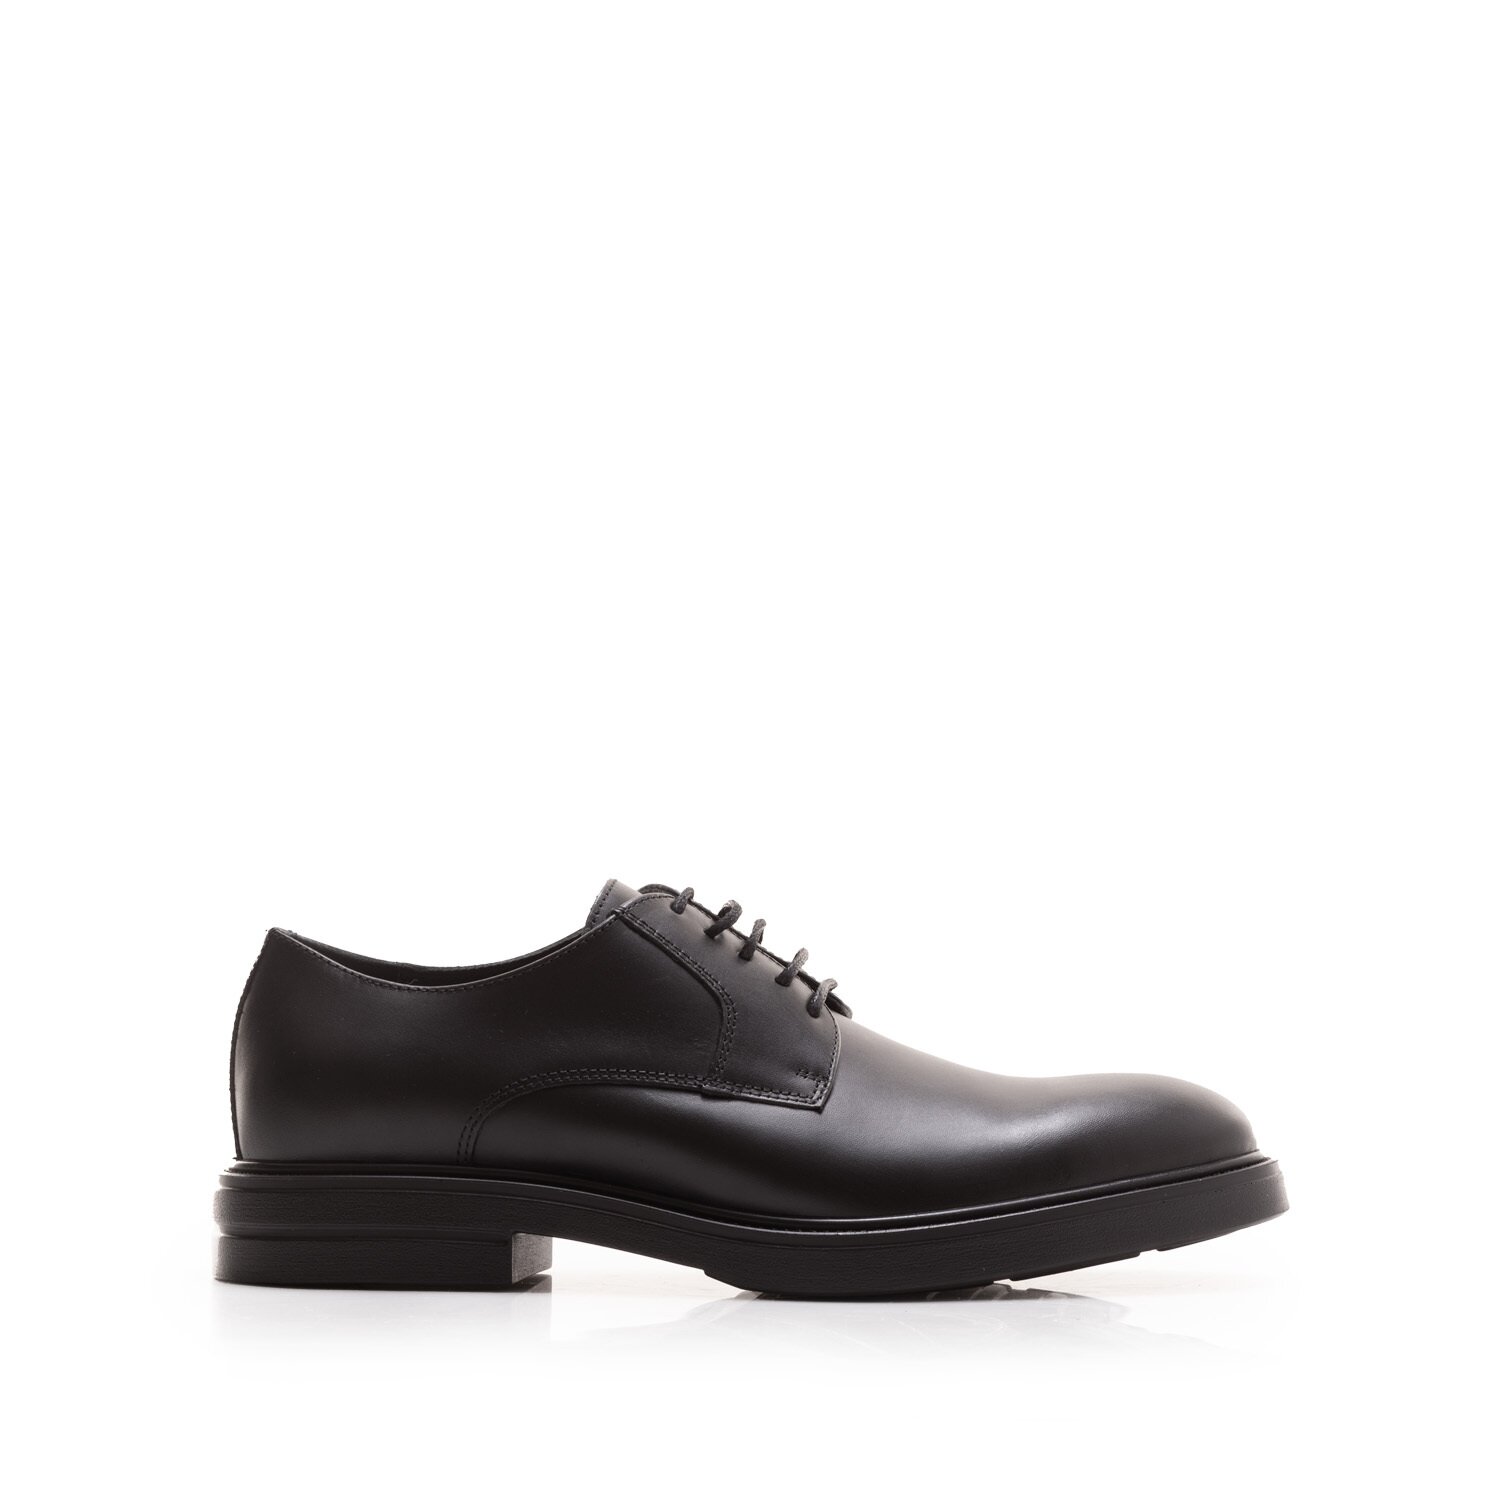 Pantofi casual bărbați din piele naturală, Leofex - 660 Negru Box